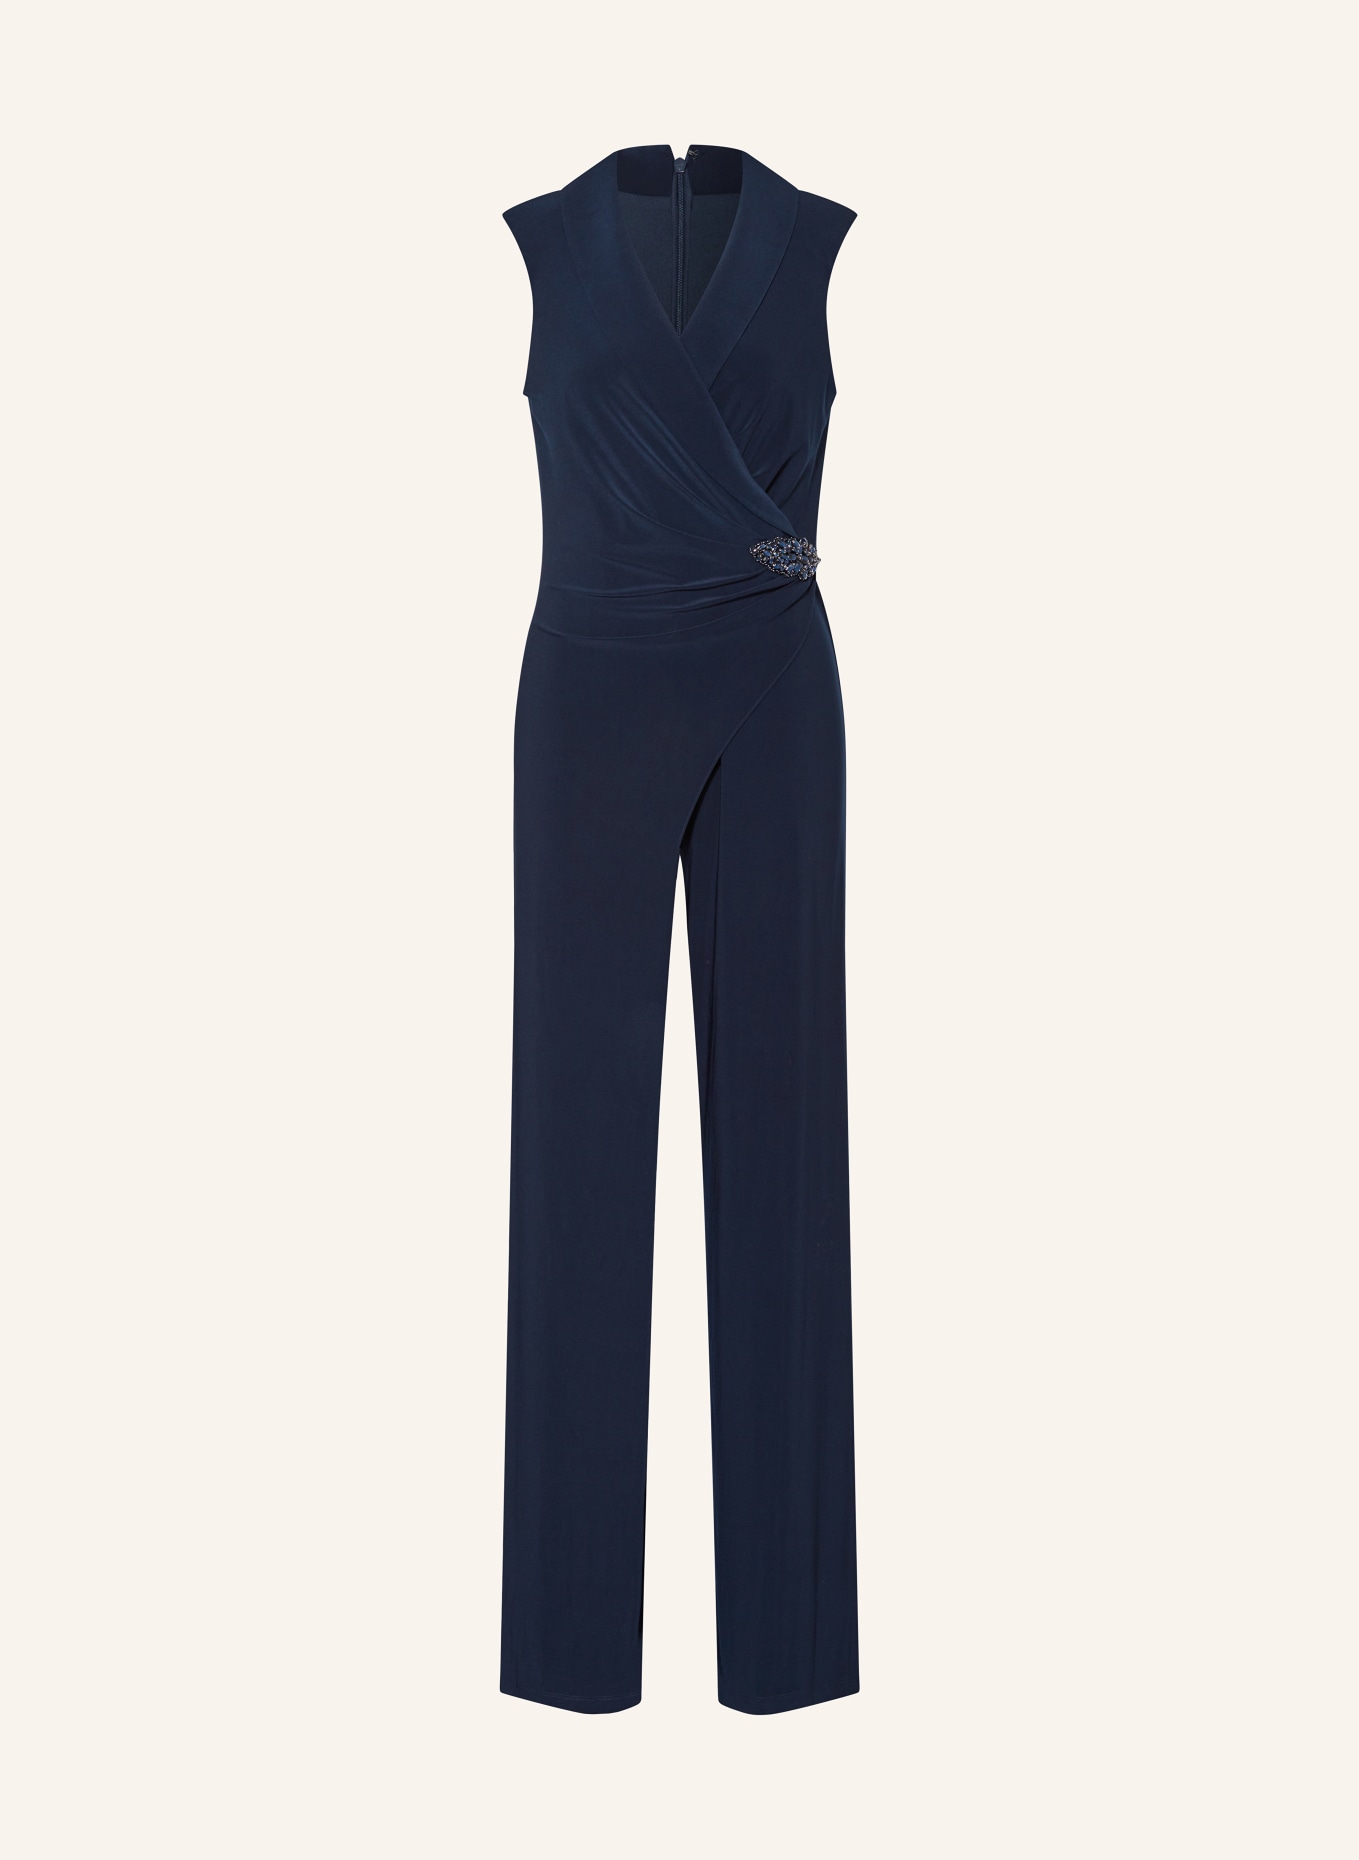 ADRIANNA PAPELL Jersey-Jumpsuit mit Schmucksteinen in Wickeloptik, Farbe: DUNKELBLAU (Bild 1)